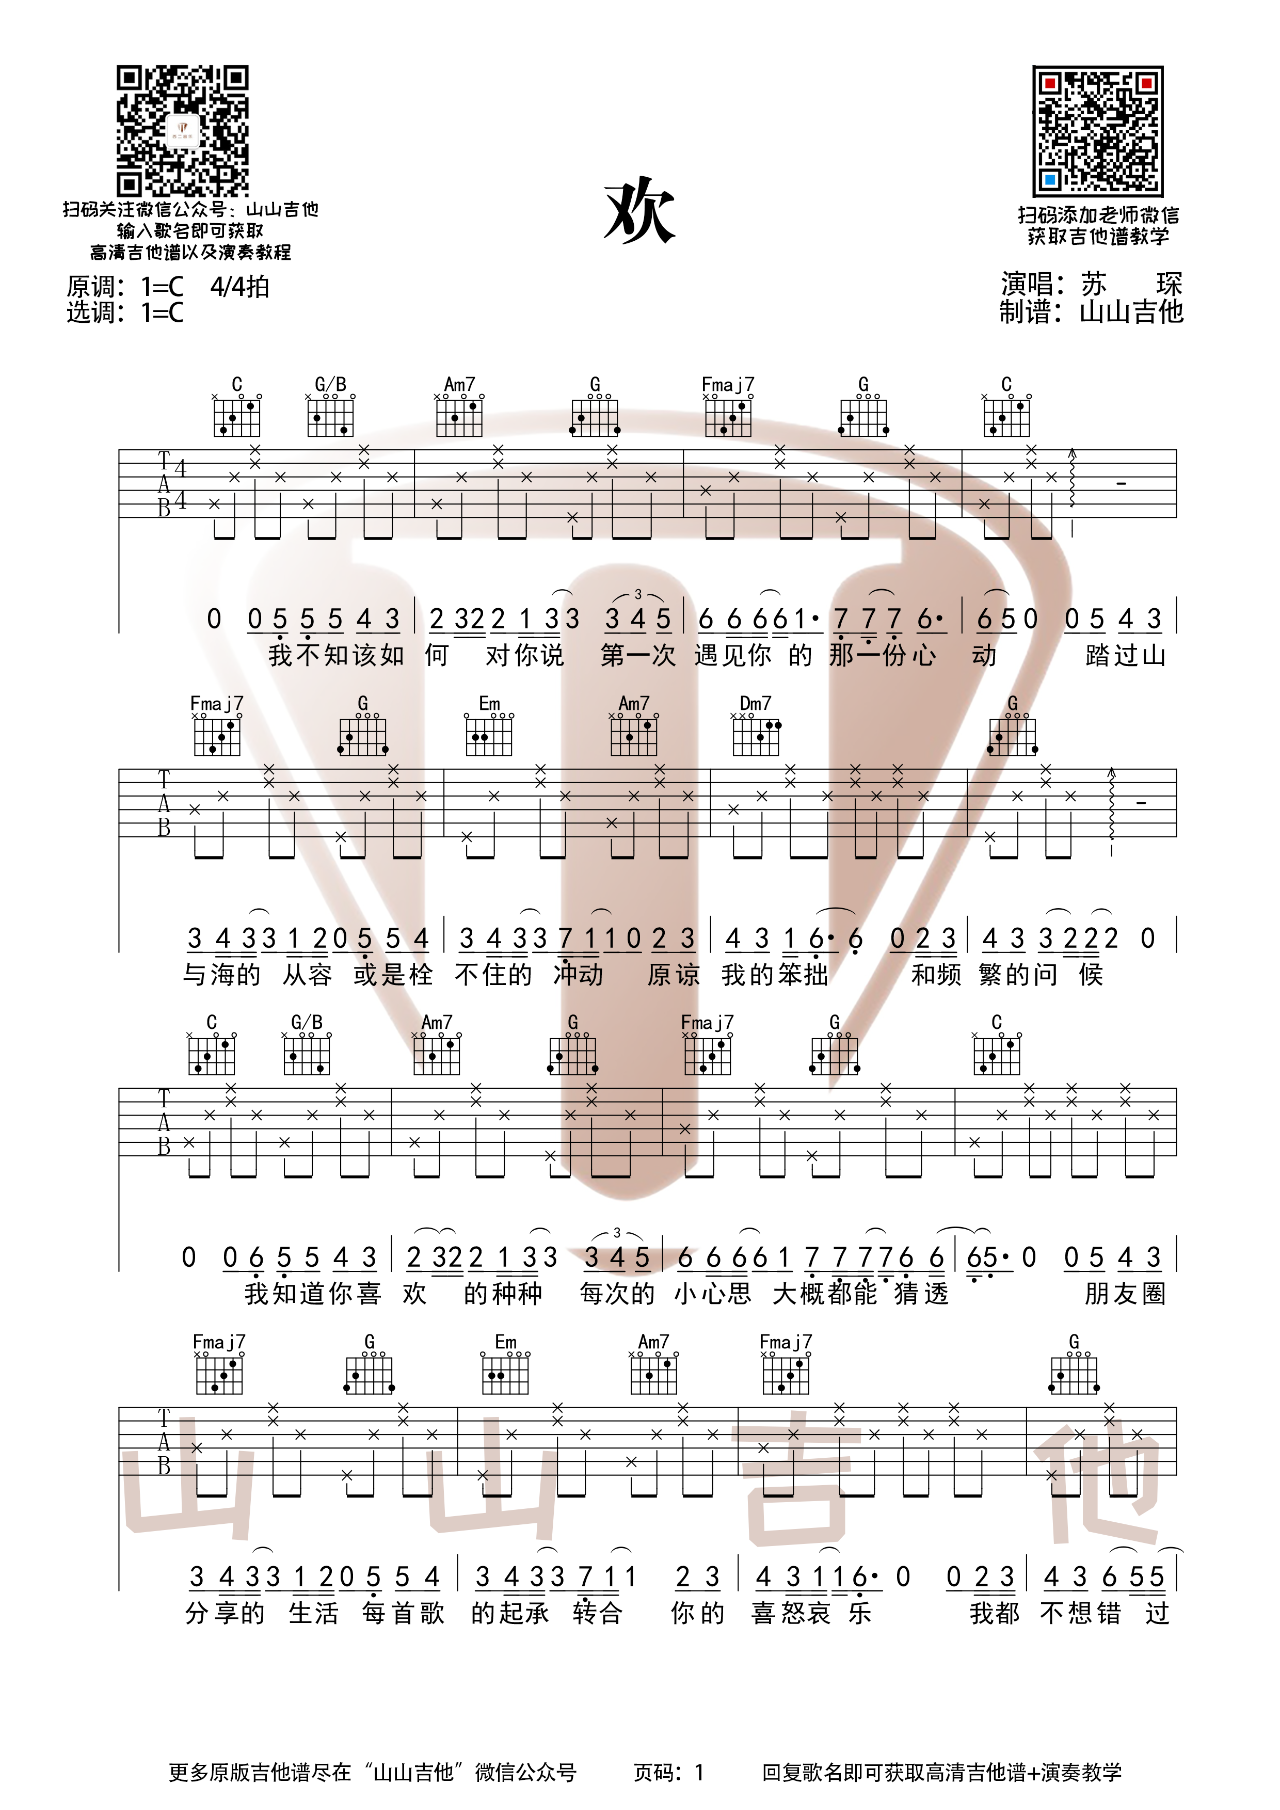 简单版《苦茶子》钢琴谱 - Starling8/Morlearn 270基础钢琴简谱 - 高清谱子图片 - 钢琴简谱